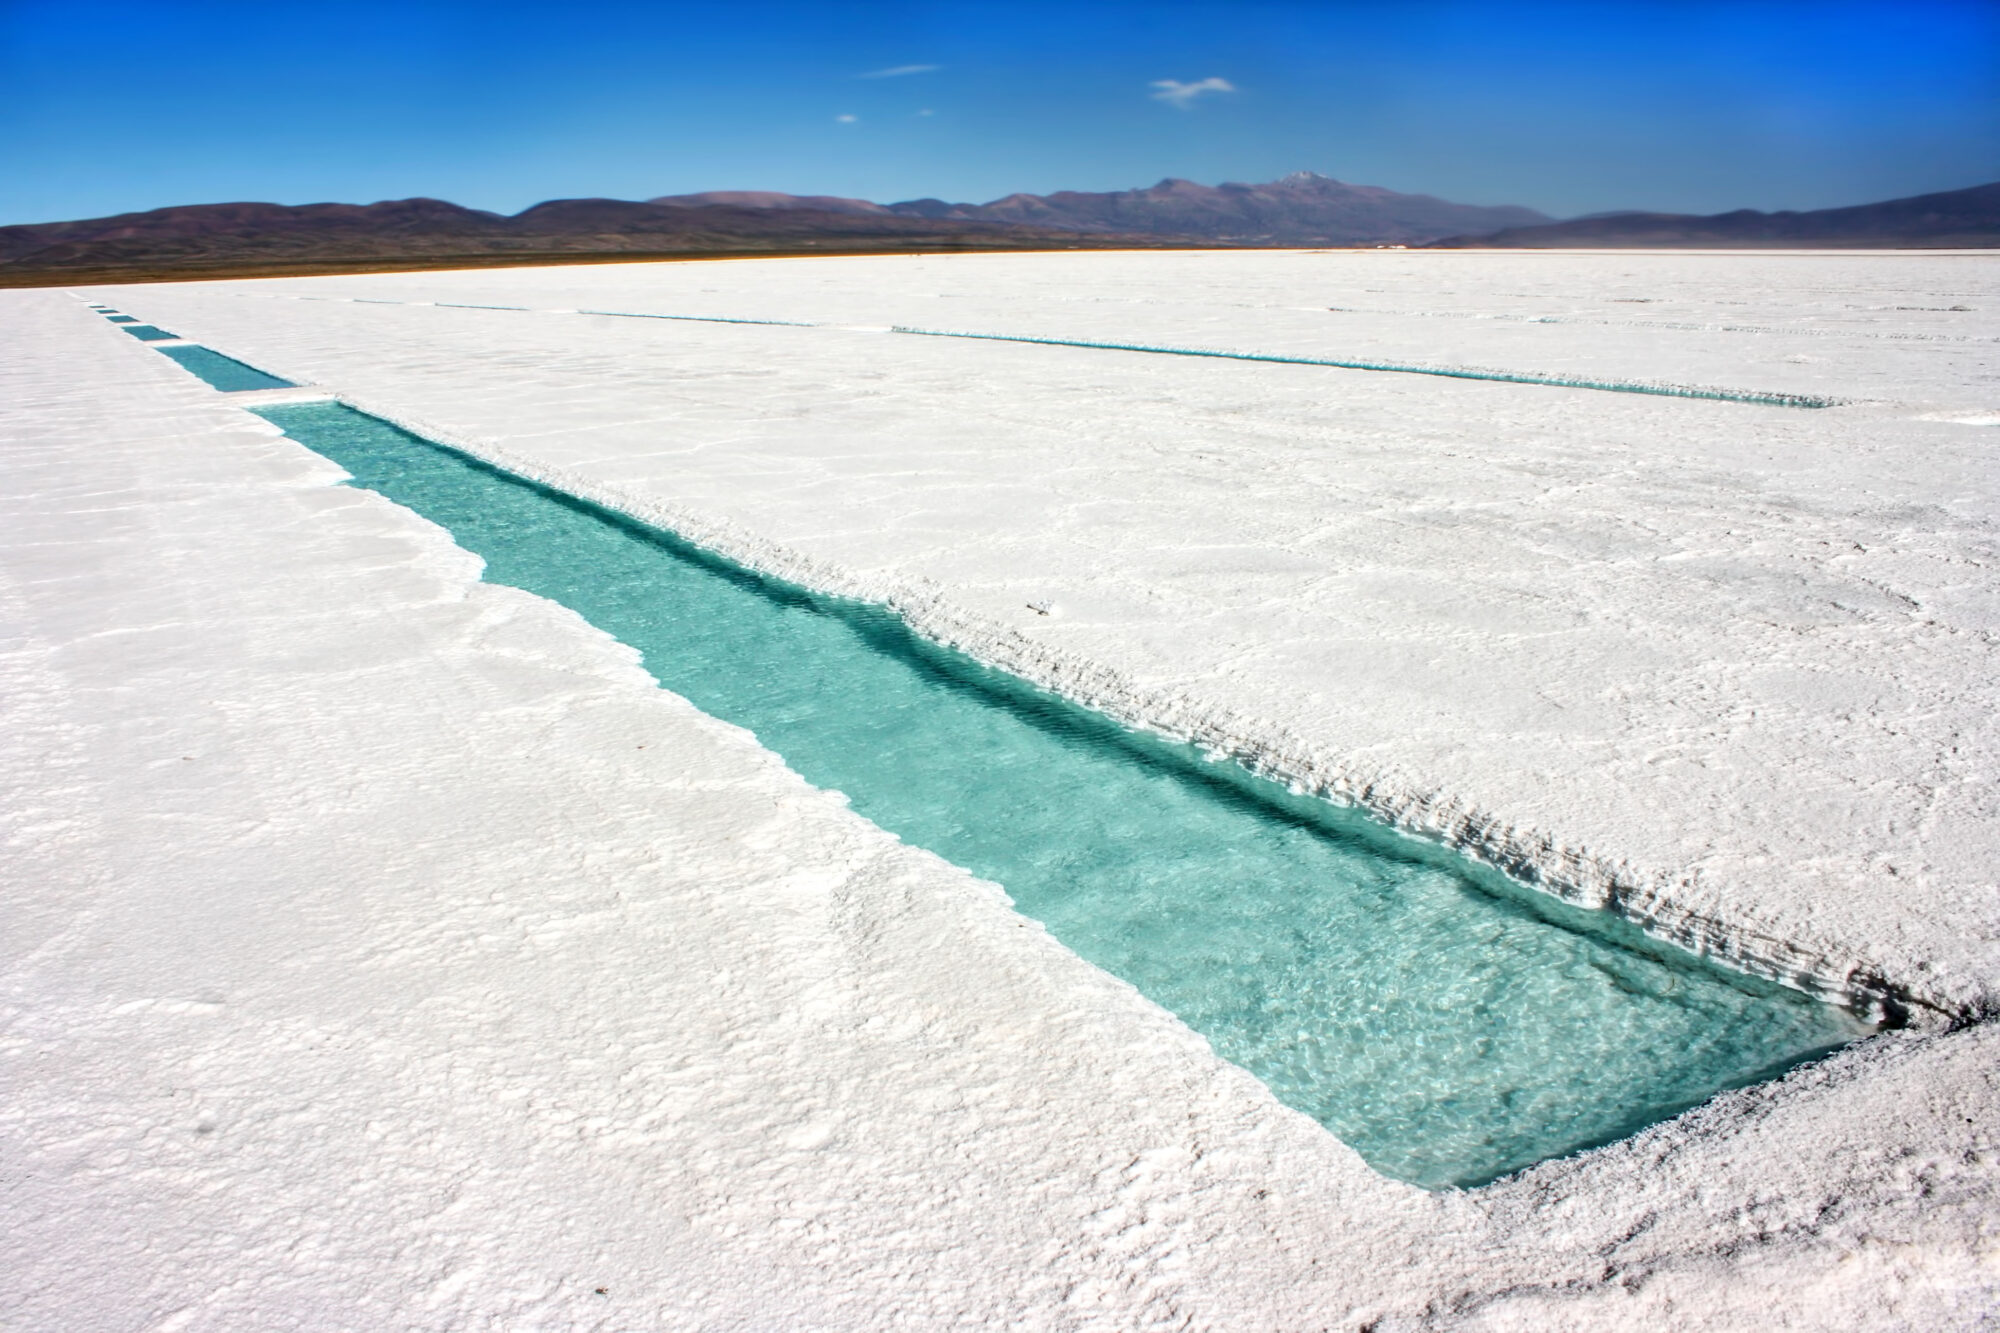 <p>Una mina de sal en Argentina, donde diversos proyectos de extracción de litio son llevados adelante por empresas chinas a pesar de la oposición de comunidades locales (imagen Alamy)</p>